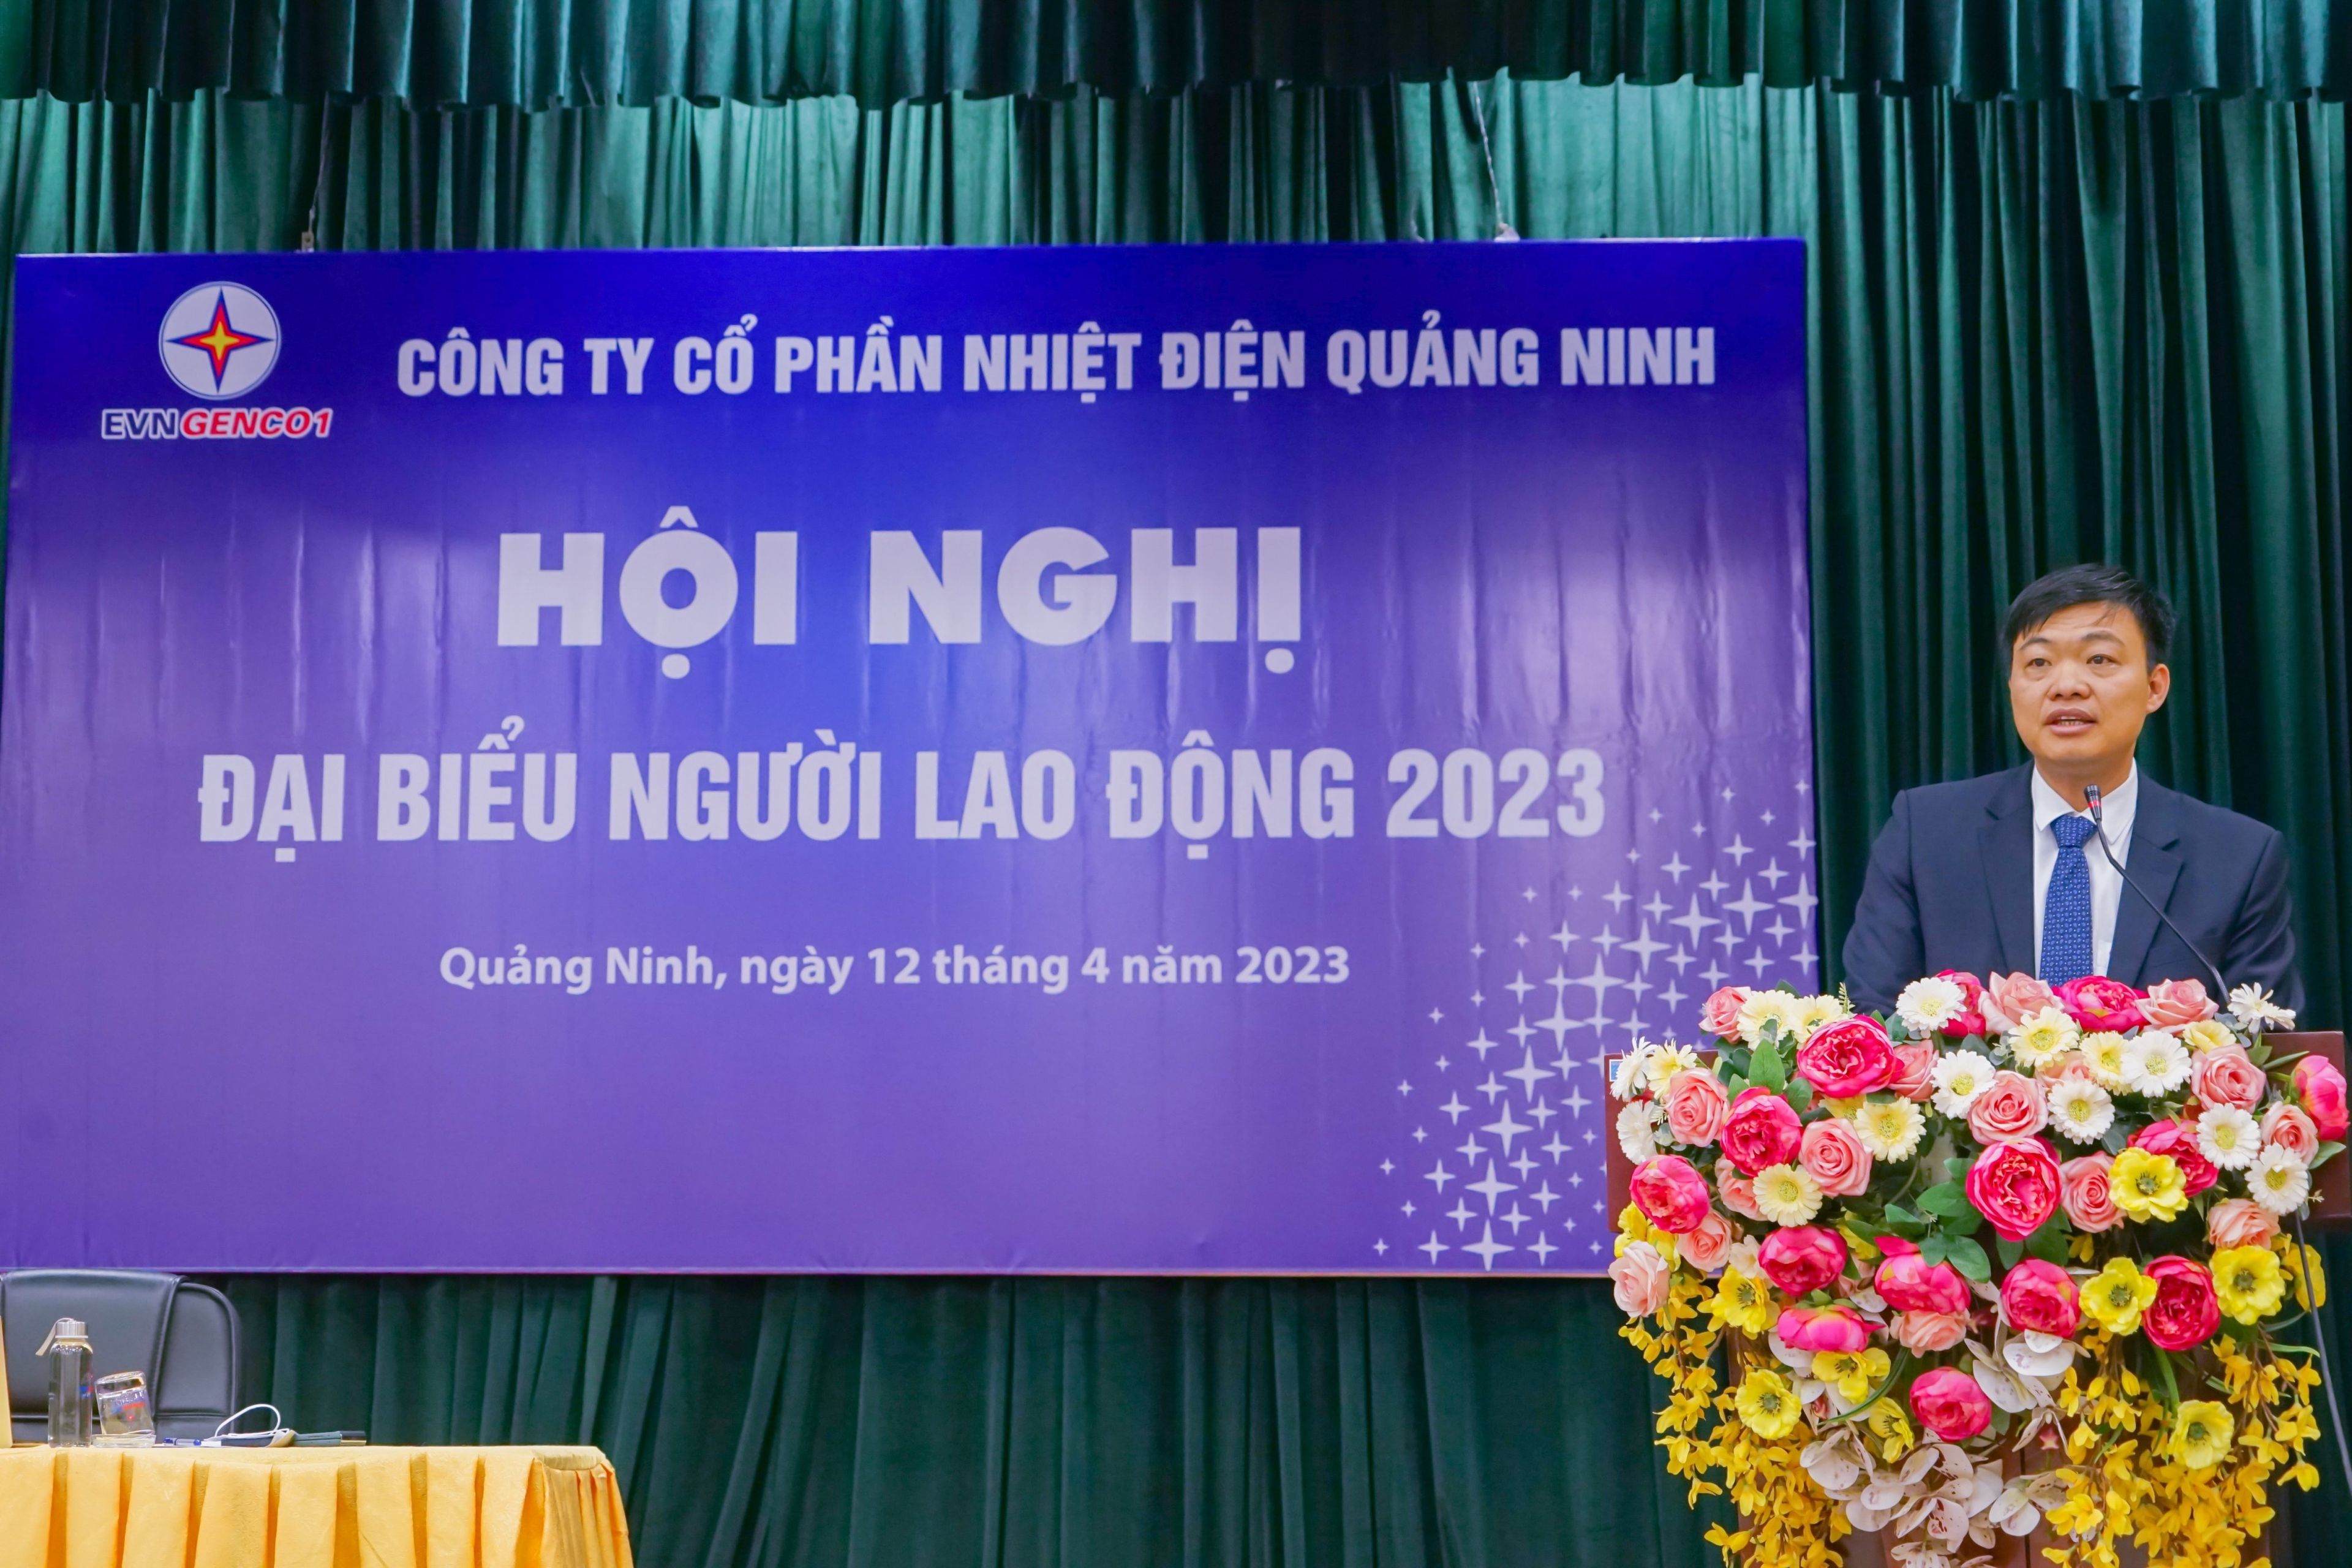 Công ty CP Nhiệt điện Quảng Ninh: Nâng cao tinh thần tiên phong xây dựng Văn hóa số